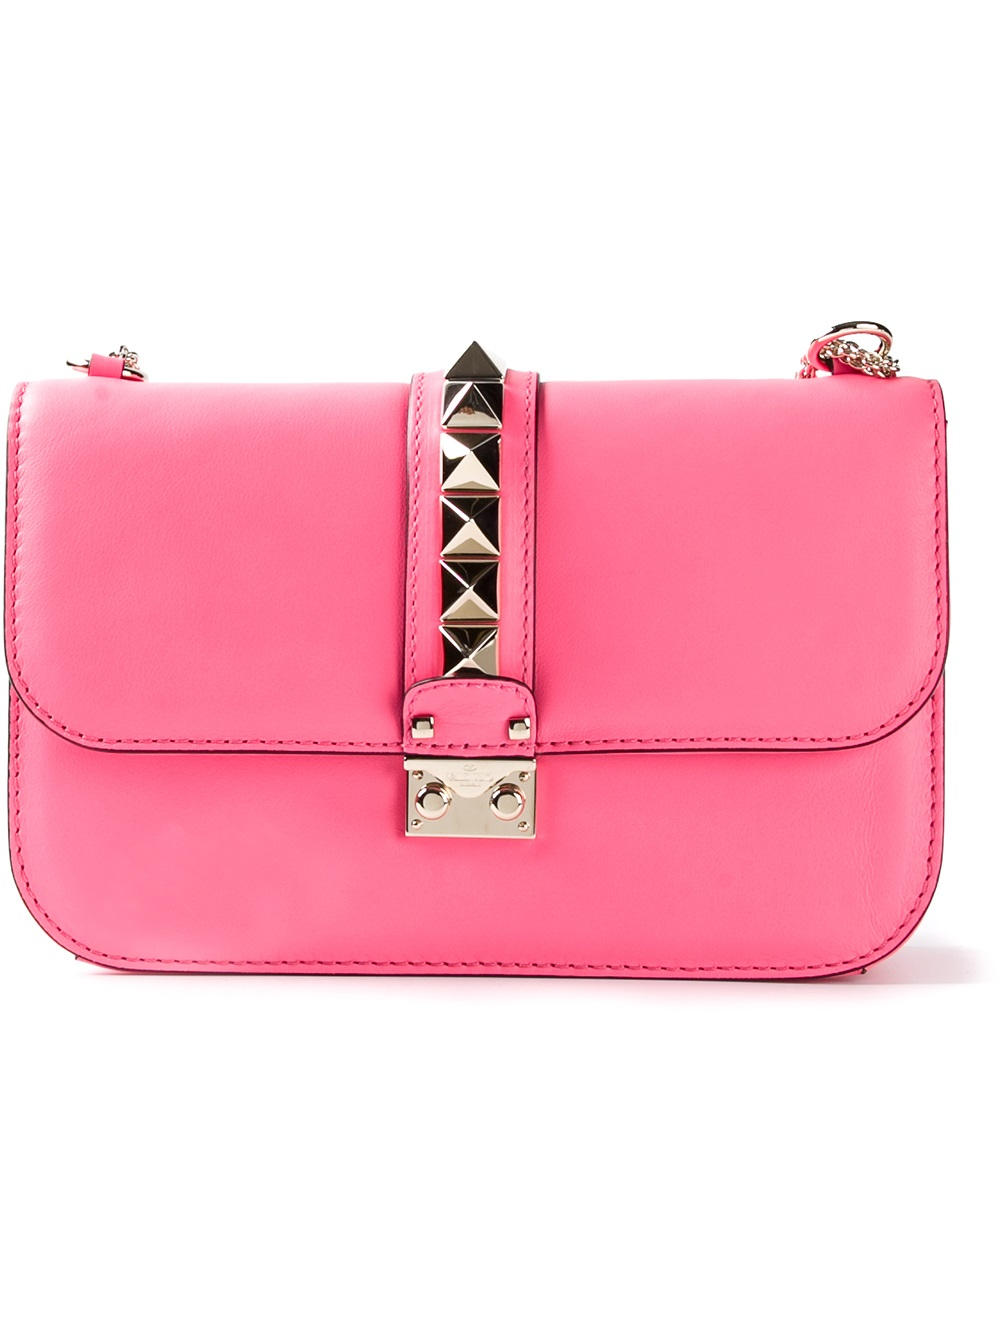 Lyst - Valentino Rockstud Shoulder Bag in Pink